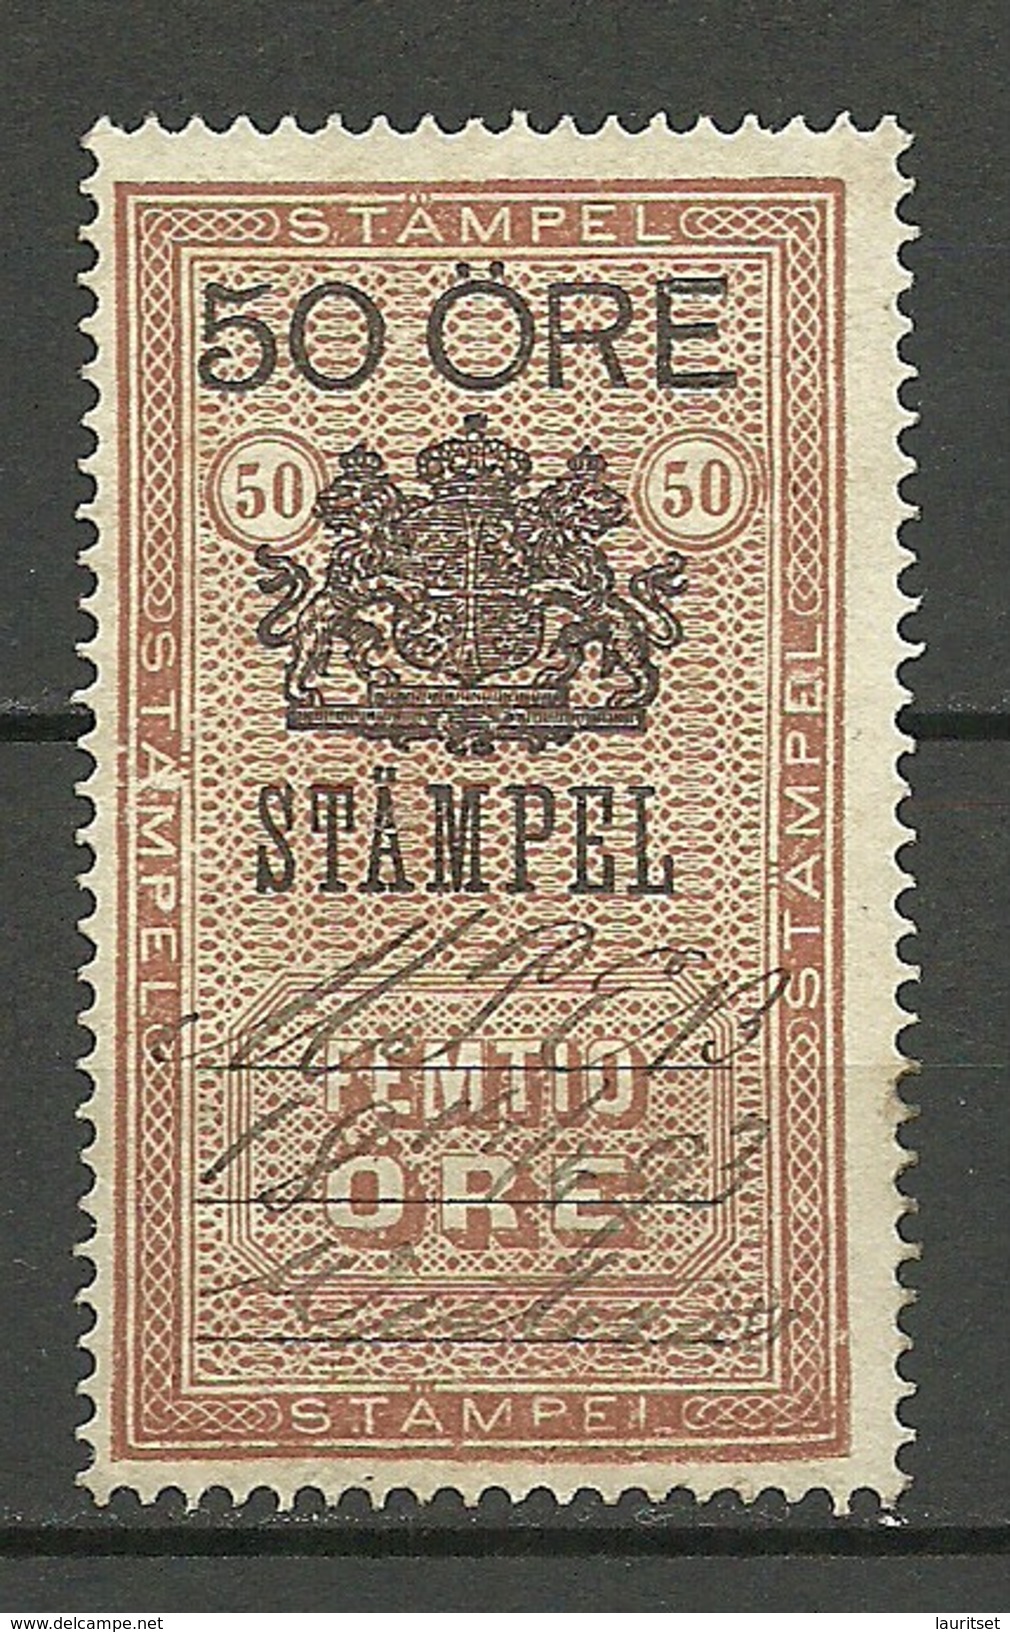 SCHWEDEN Sweden O 1893 Stempelmarke 50 öre O - Revenue Stamps